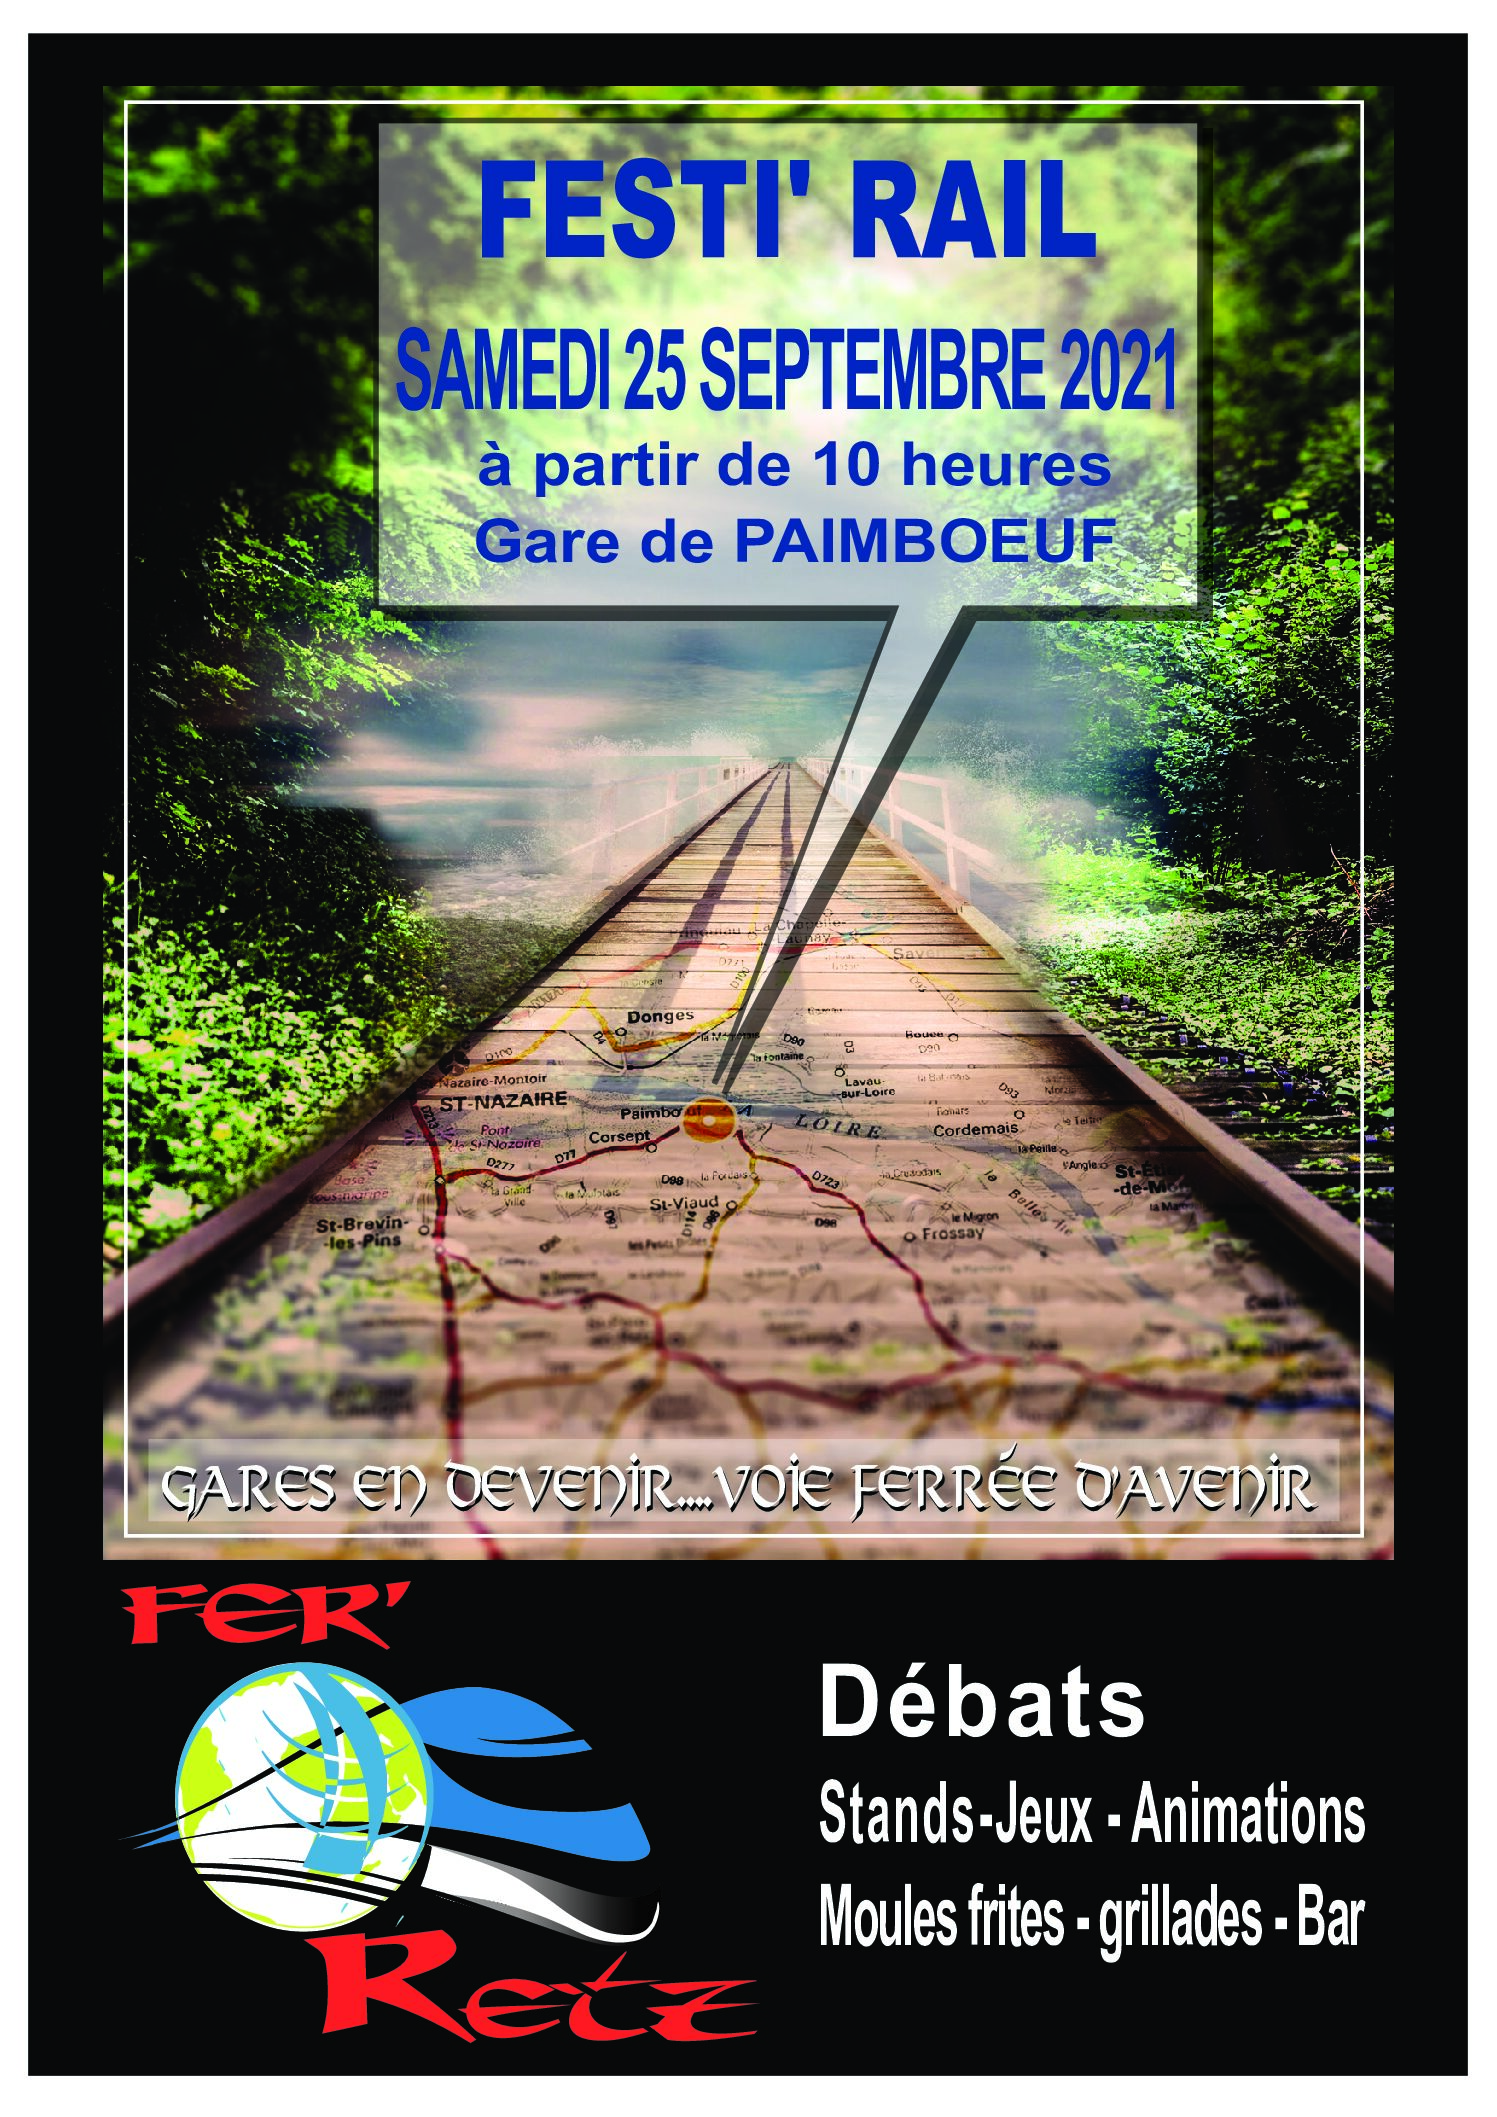 Retour sur la gare de Paimboeuf et son Festi'rail de septembre 2021